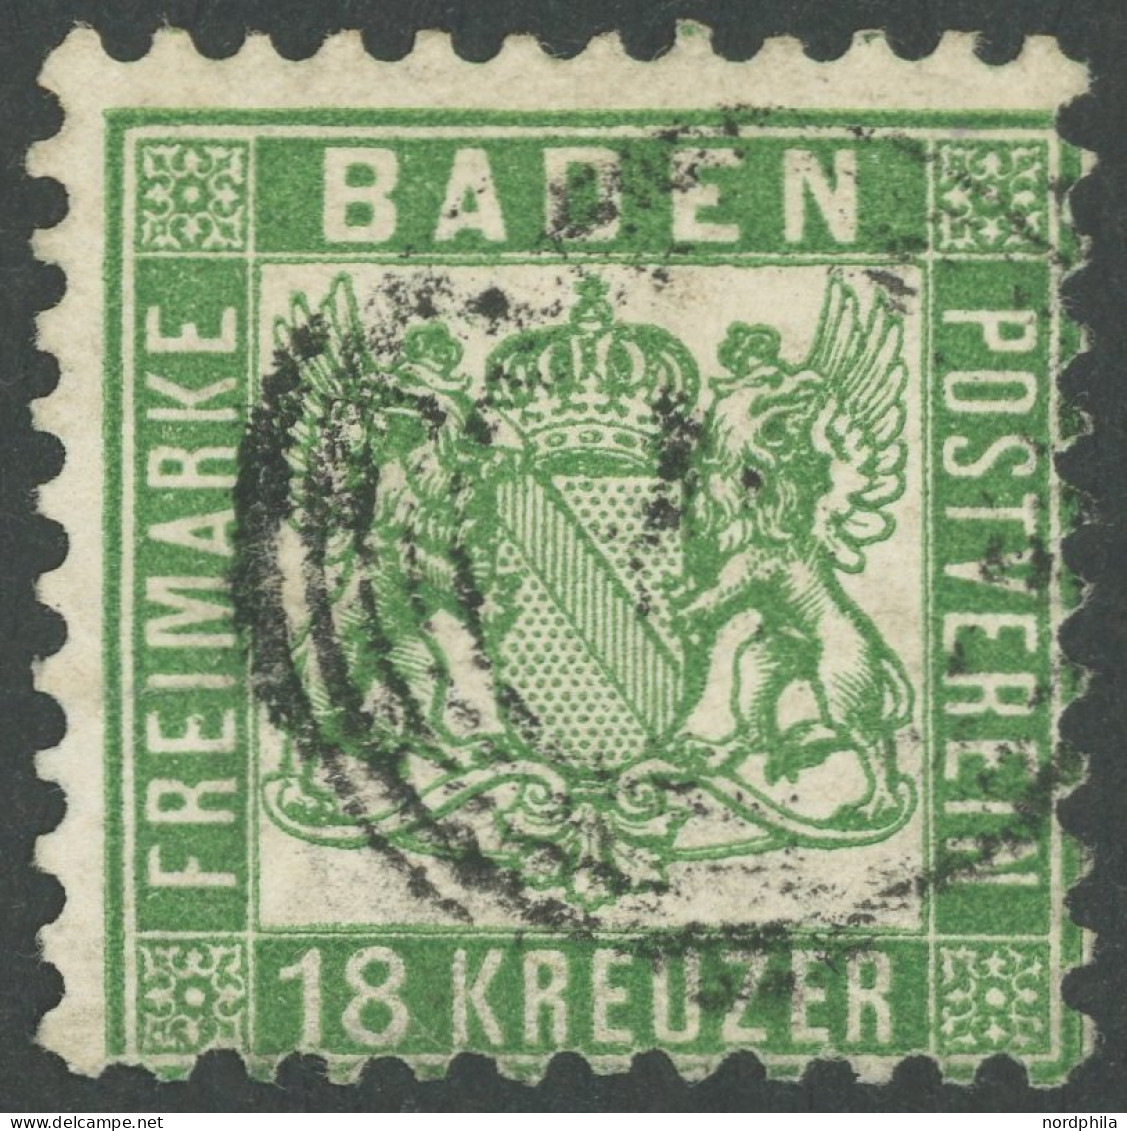 BADEN 21a O, 1862, 18 Kr. Grün, Einriss Links Geschlossen, Feinst, Kurzbefund Stegmüller, Mi. 700.- - Used